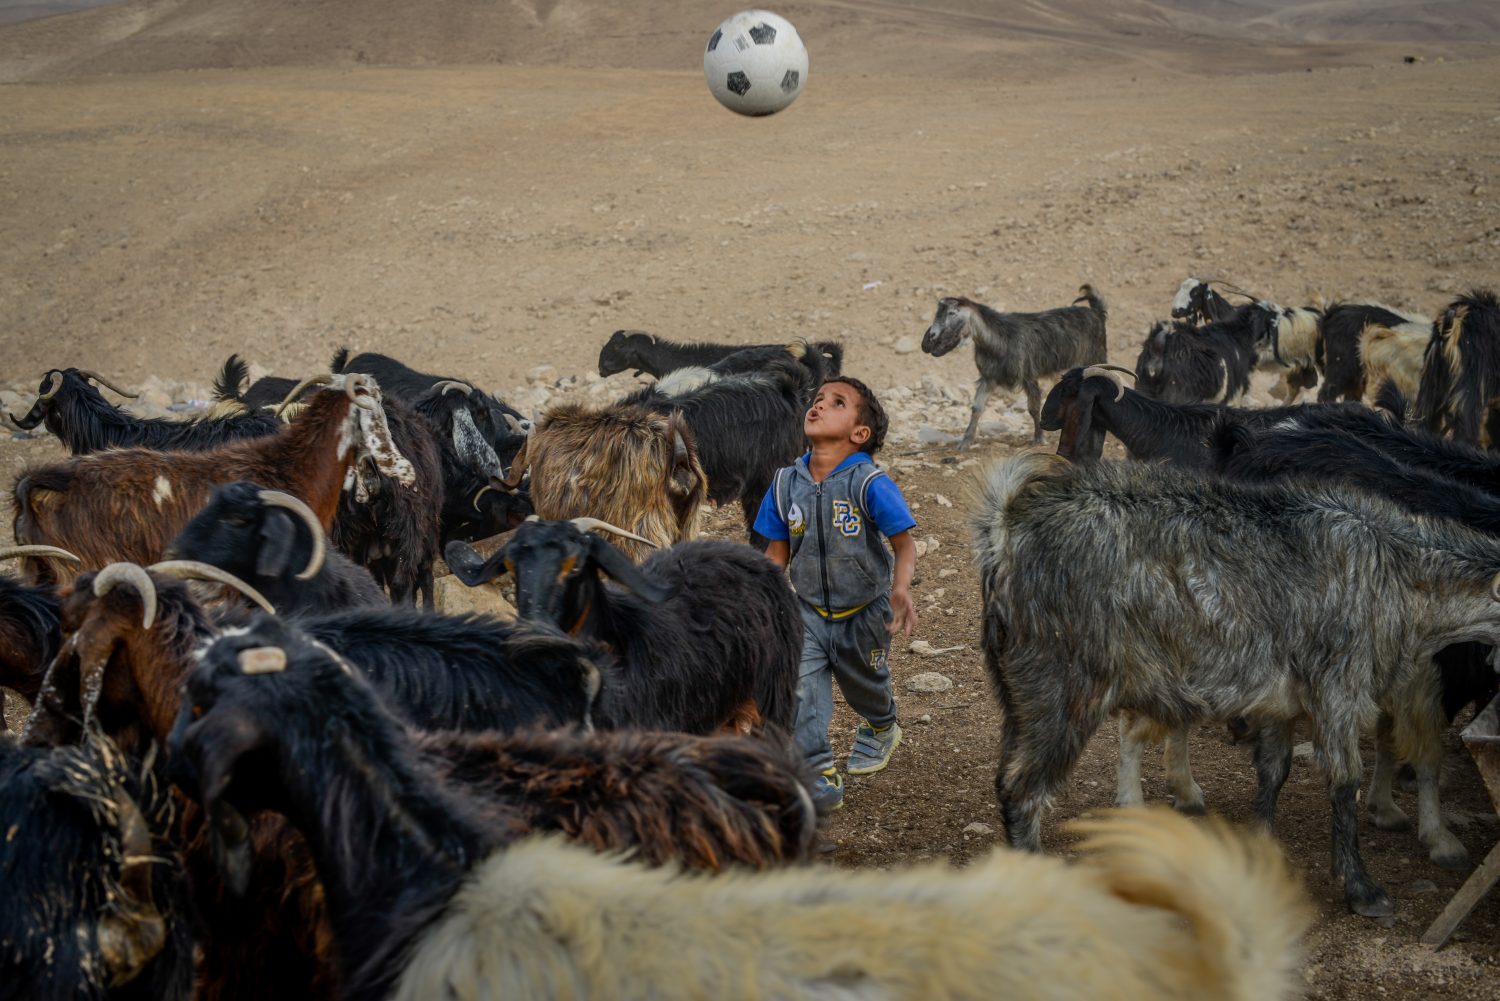 Kisfiú a kecskenyáj közepén focizik az Ali Rashayda család területén, a Júdeai sivatagban, Jeruzsálemtől kb. 50 kilométerre keletre 2018. október 23-án. Ali Rashayda az egyik utolsó beduin család, aki hagyományos, nomád állattartó életmódot folytat - fotó: Bea Bar Kallos / Izraelinfo